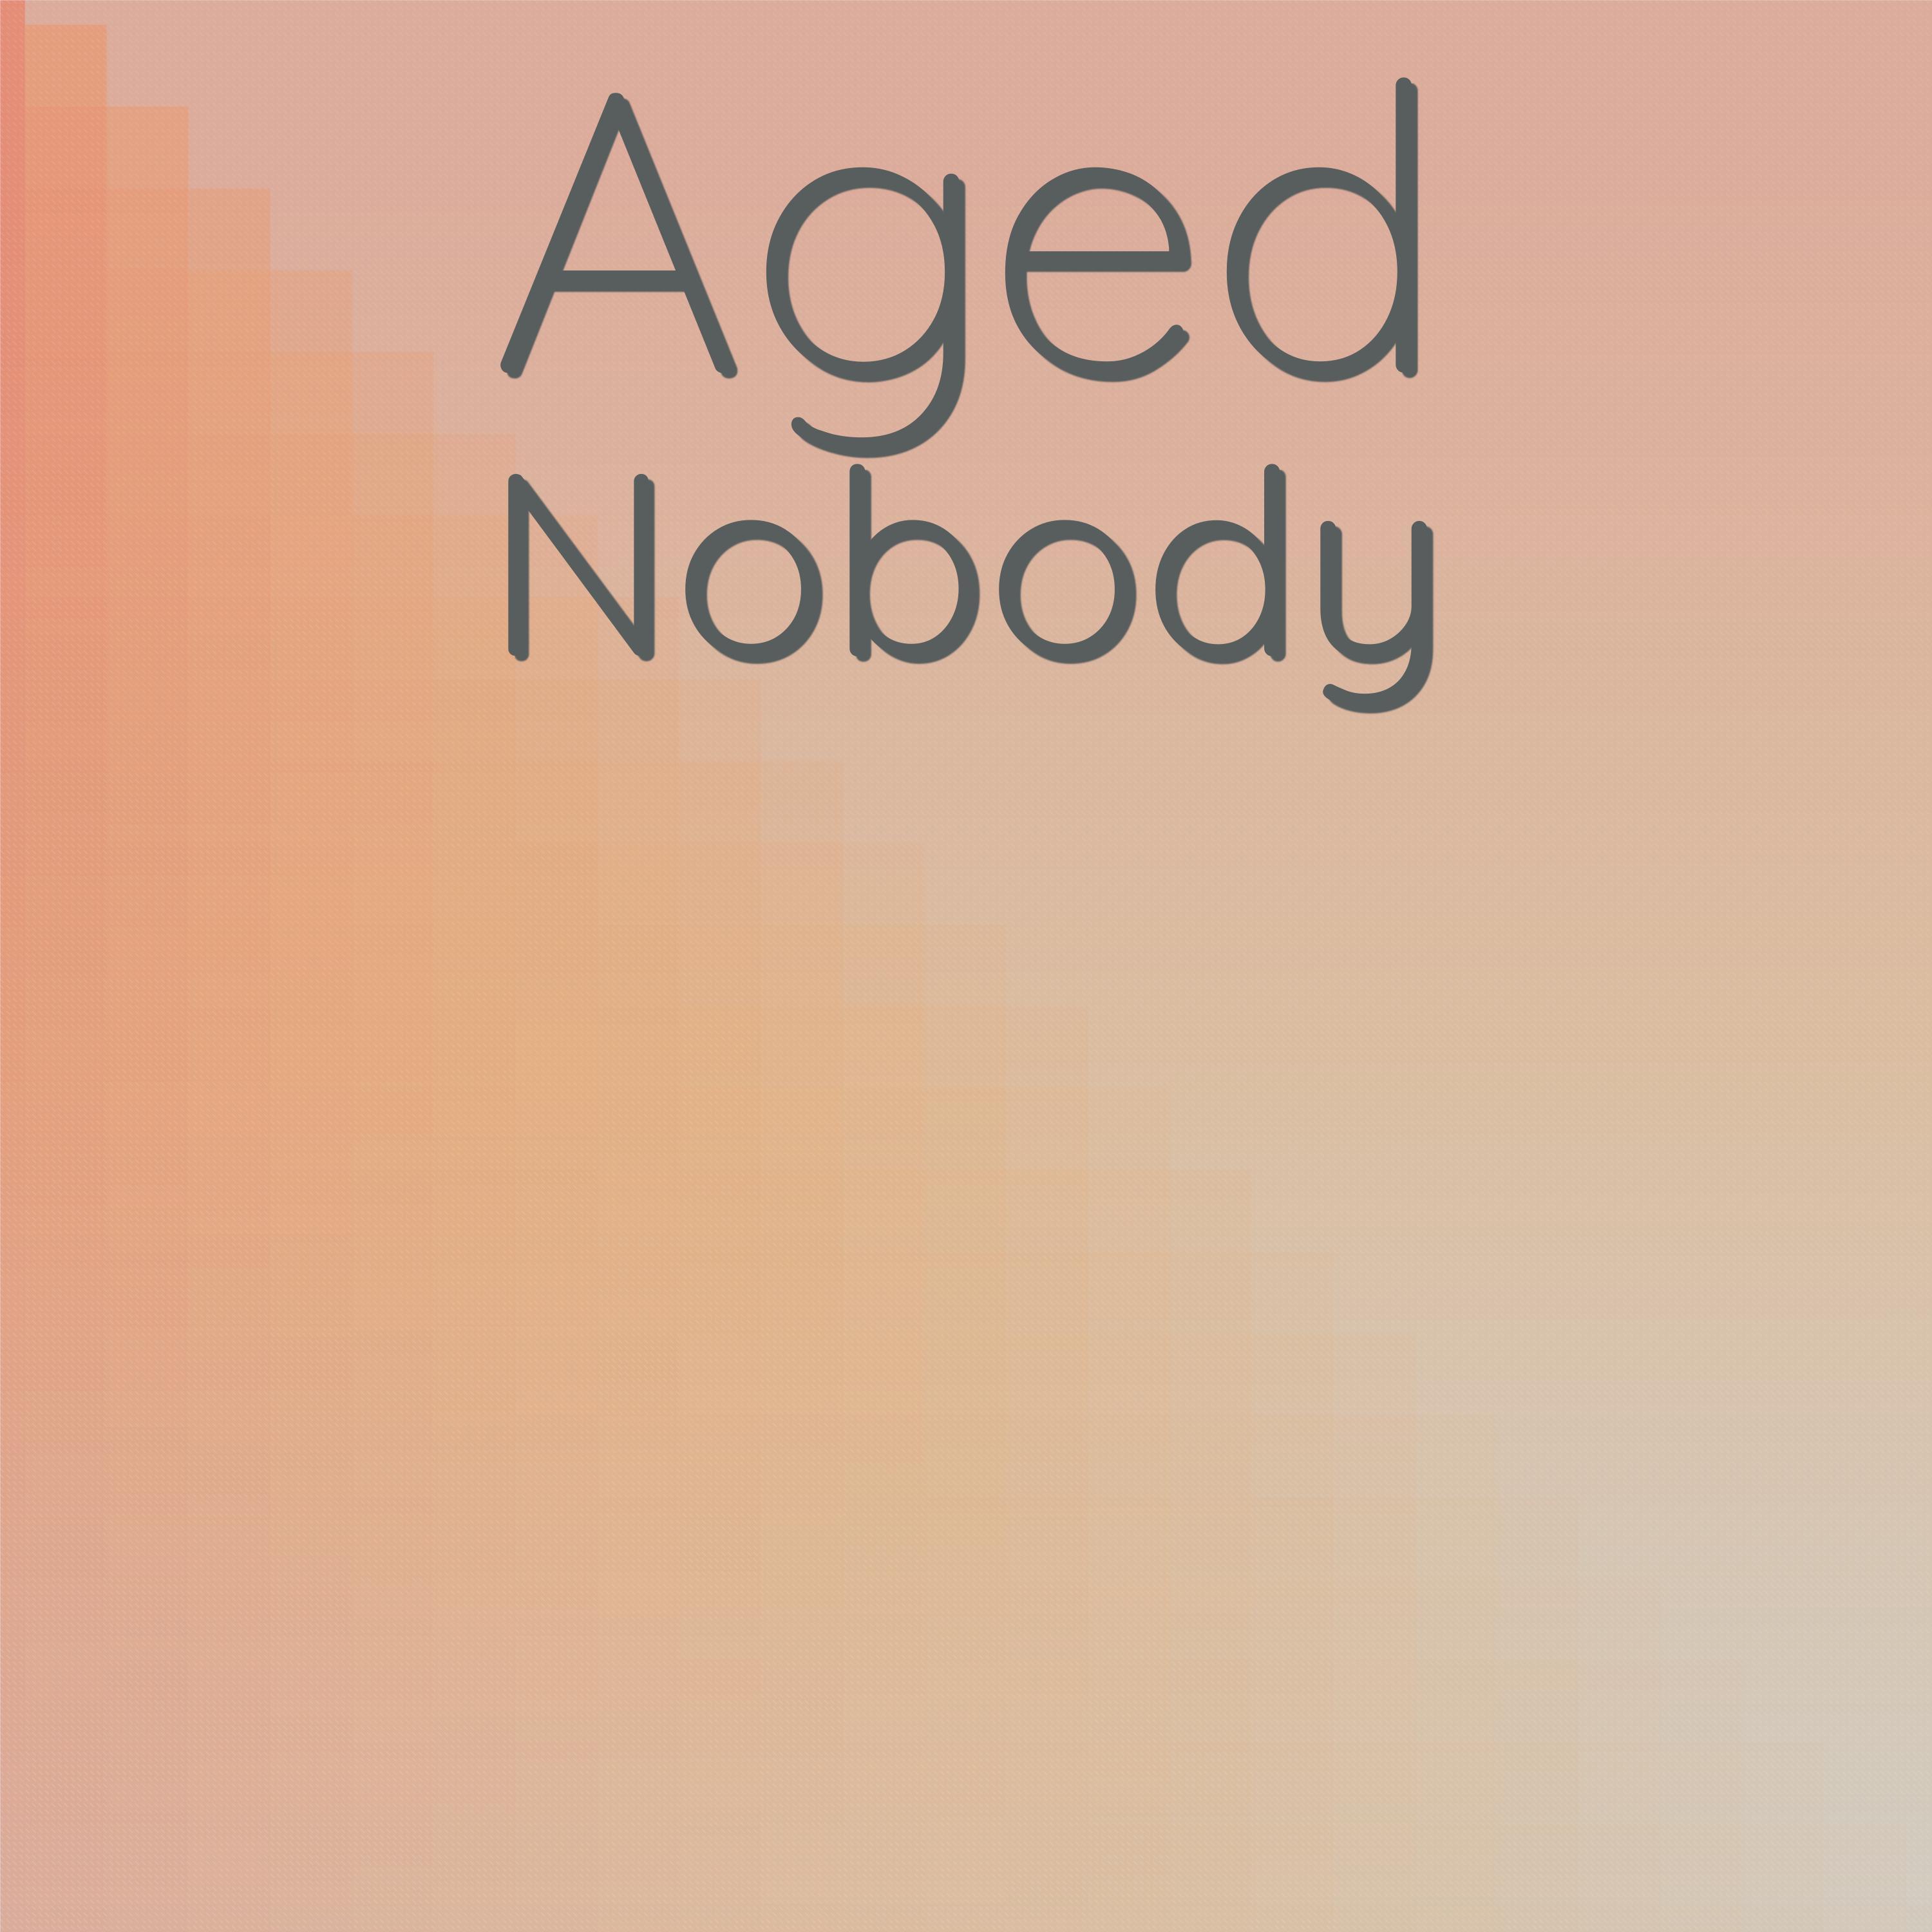 Mado Senan - Aged Nobody